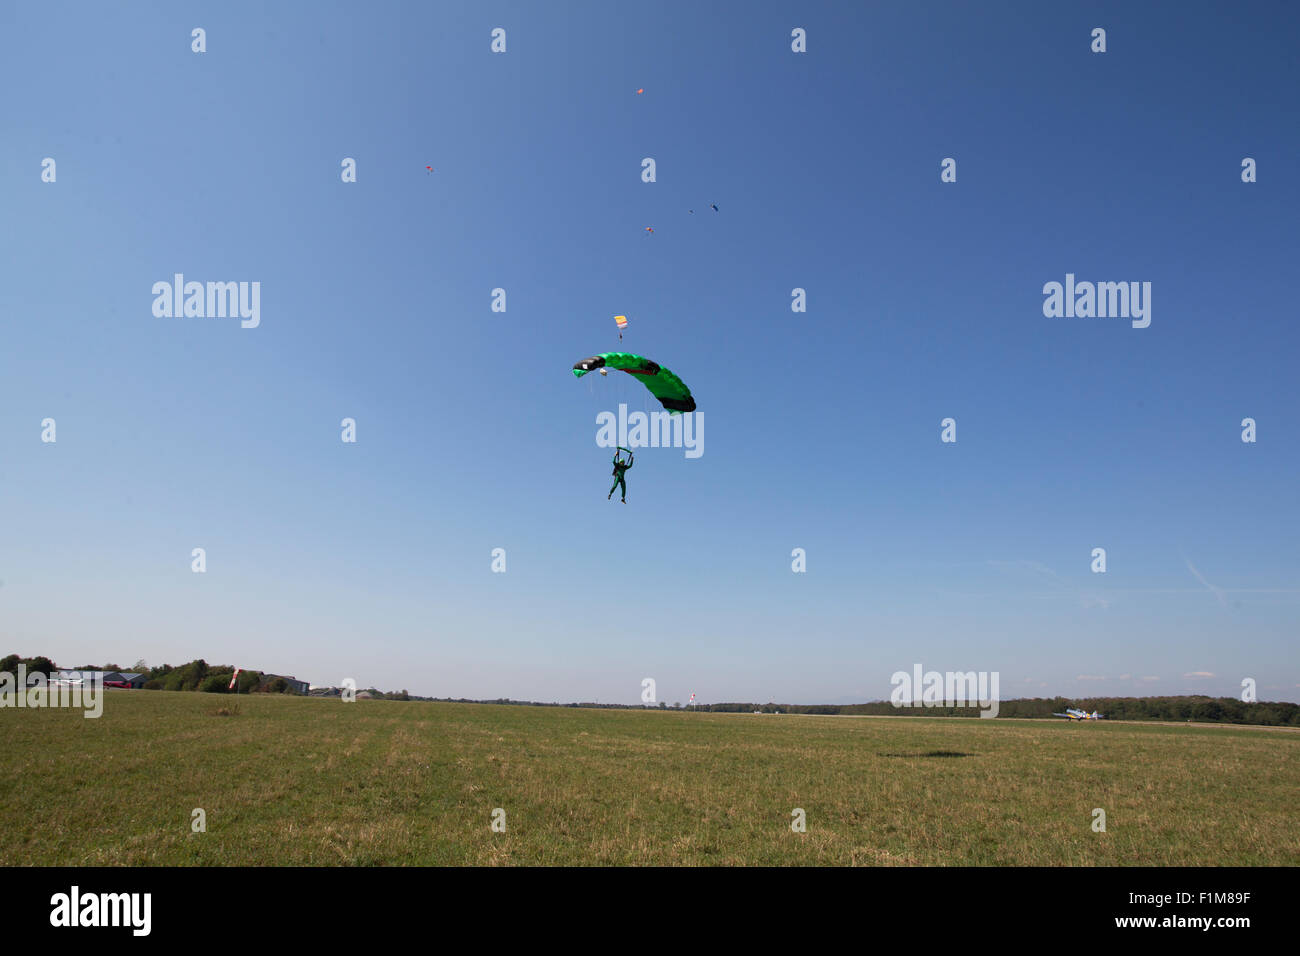 Parachutiste sous voile s'approche de la zone d'atterrissage après une skydive jump dans le ciel bleu. Banque D'Images